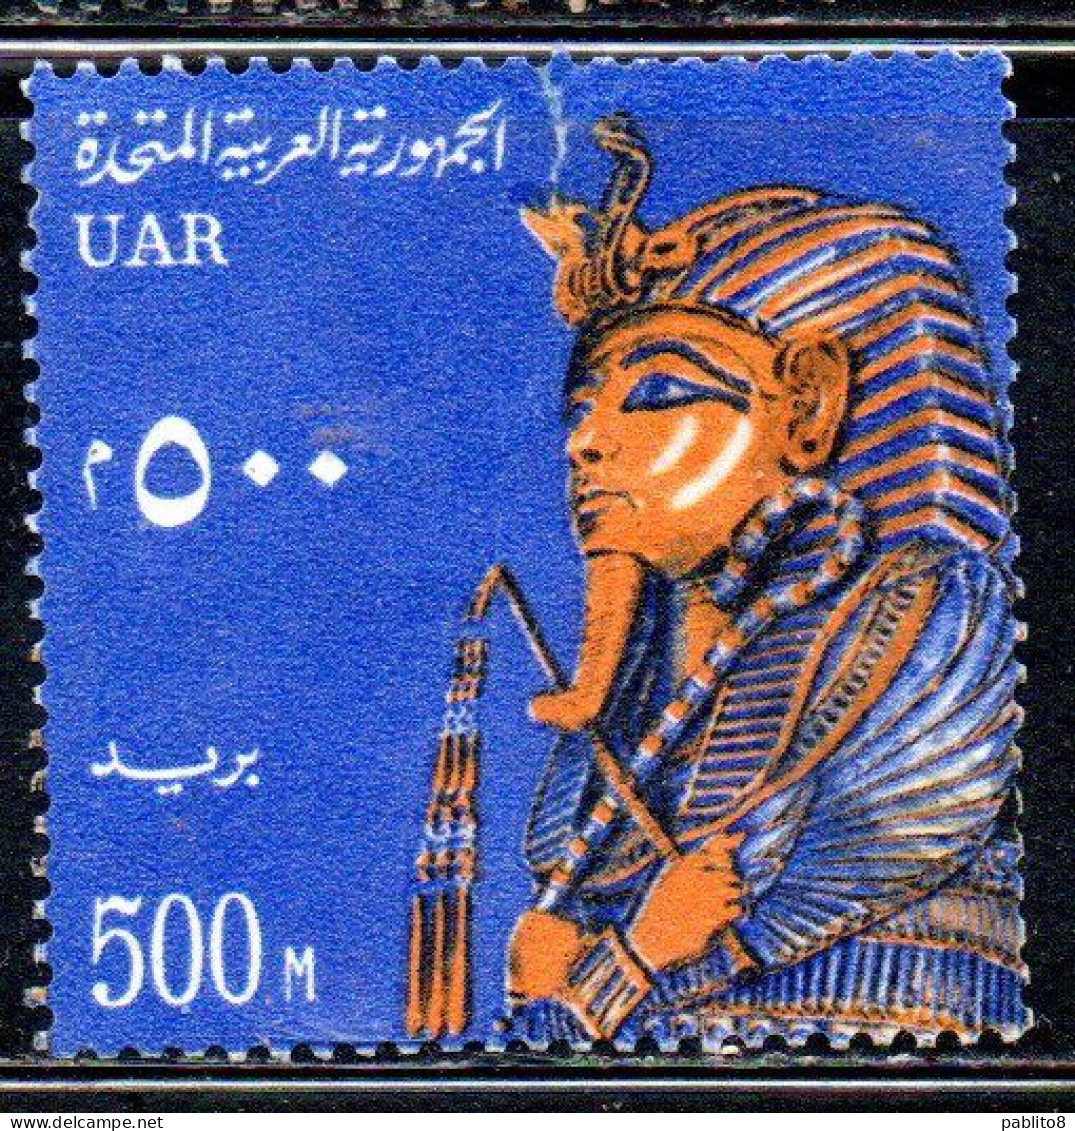 UAR EGYPT EGITTO 1964 1967 FUNERARI MASK C.F.TUTANKHAMEN 500m  MH - Nuovi